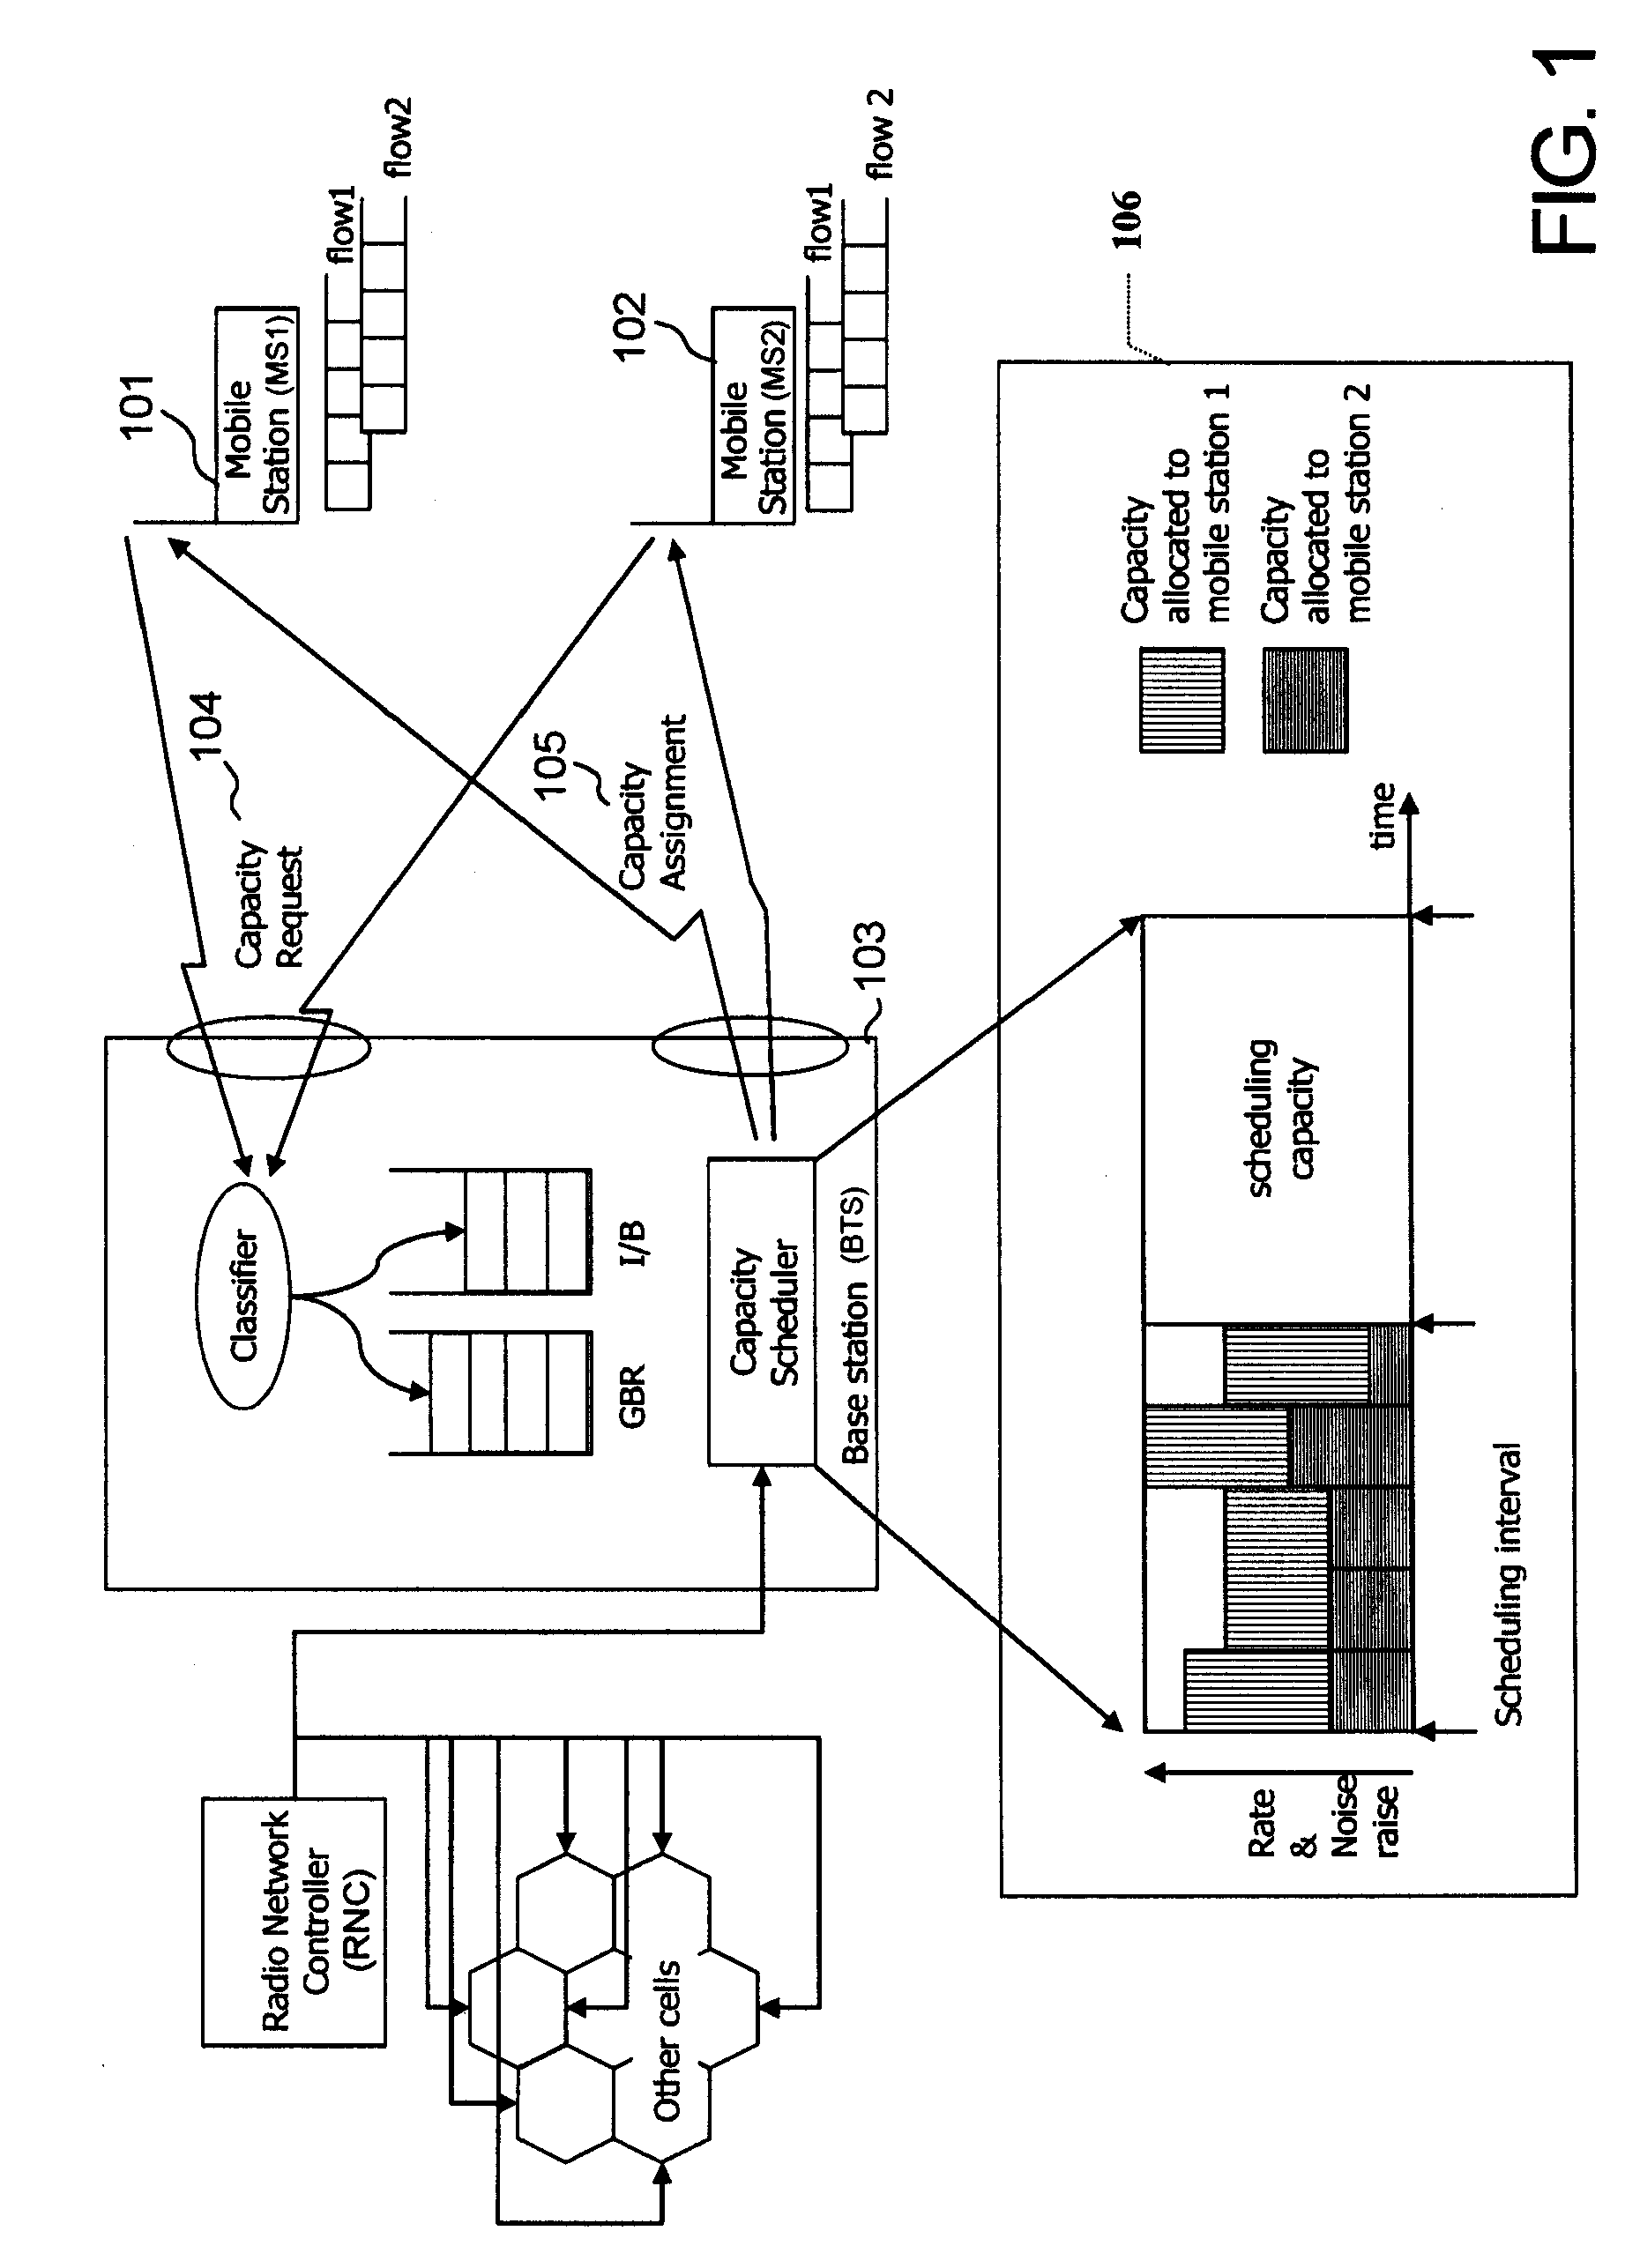 Transmission method for uplink transport layer